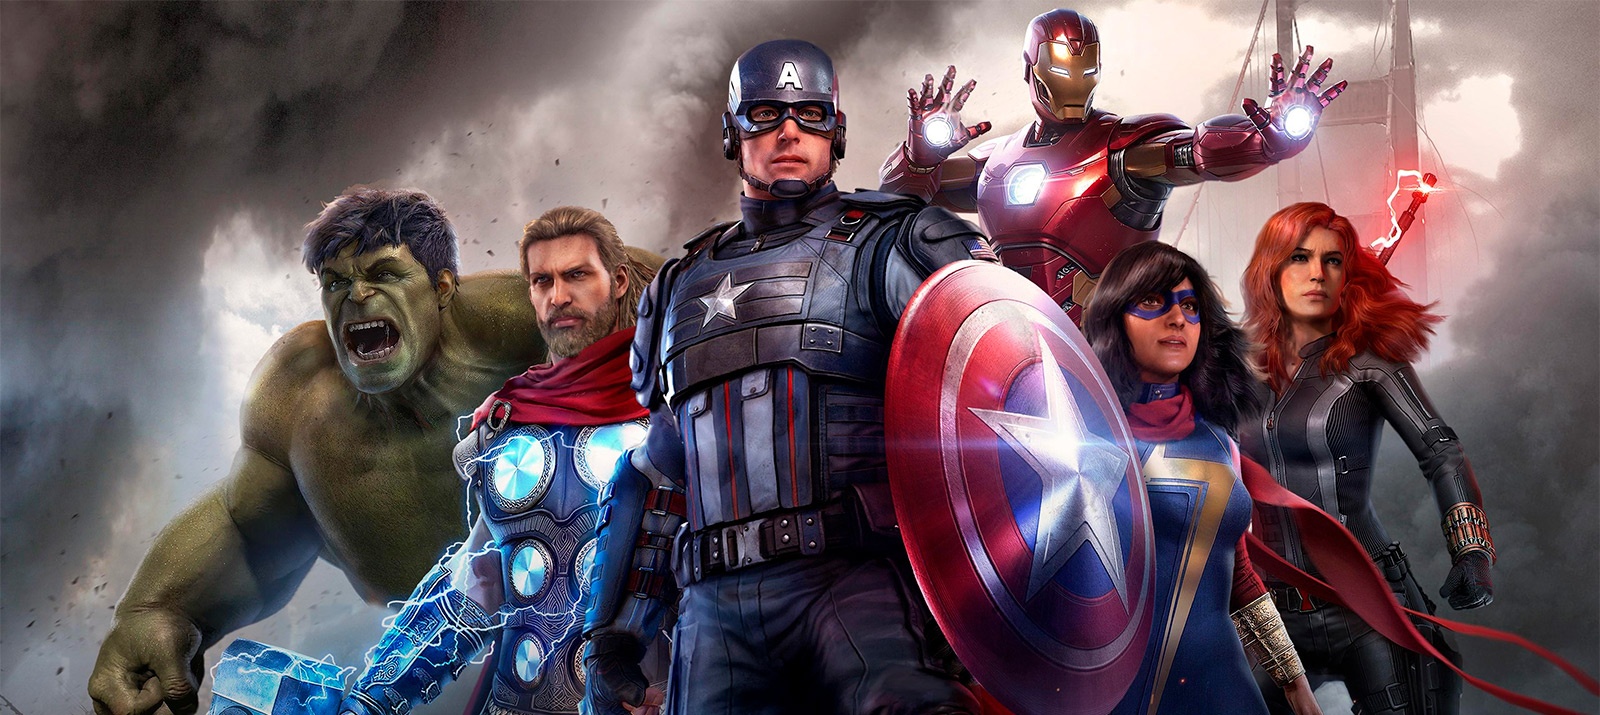 Quen non quere unirse aos Vingadores? Revisión do xogo "Avengers Marvel"